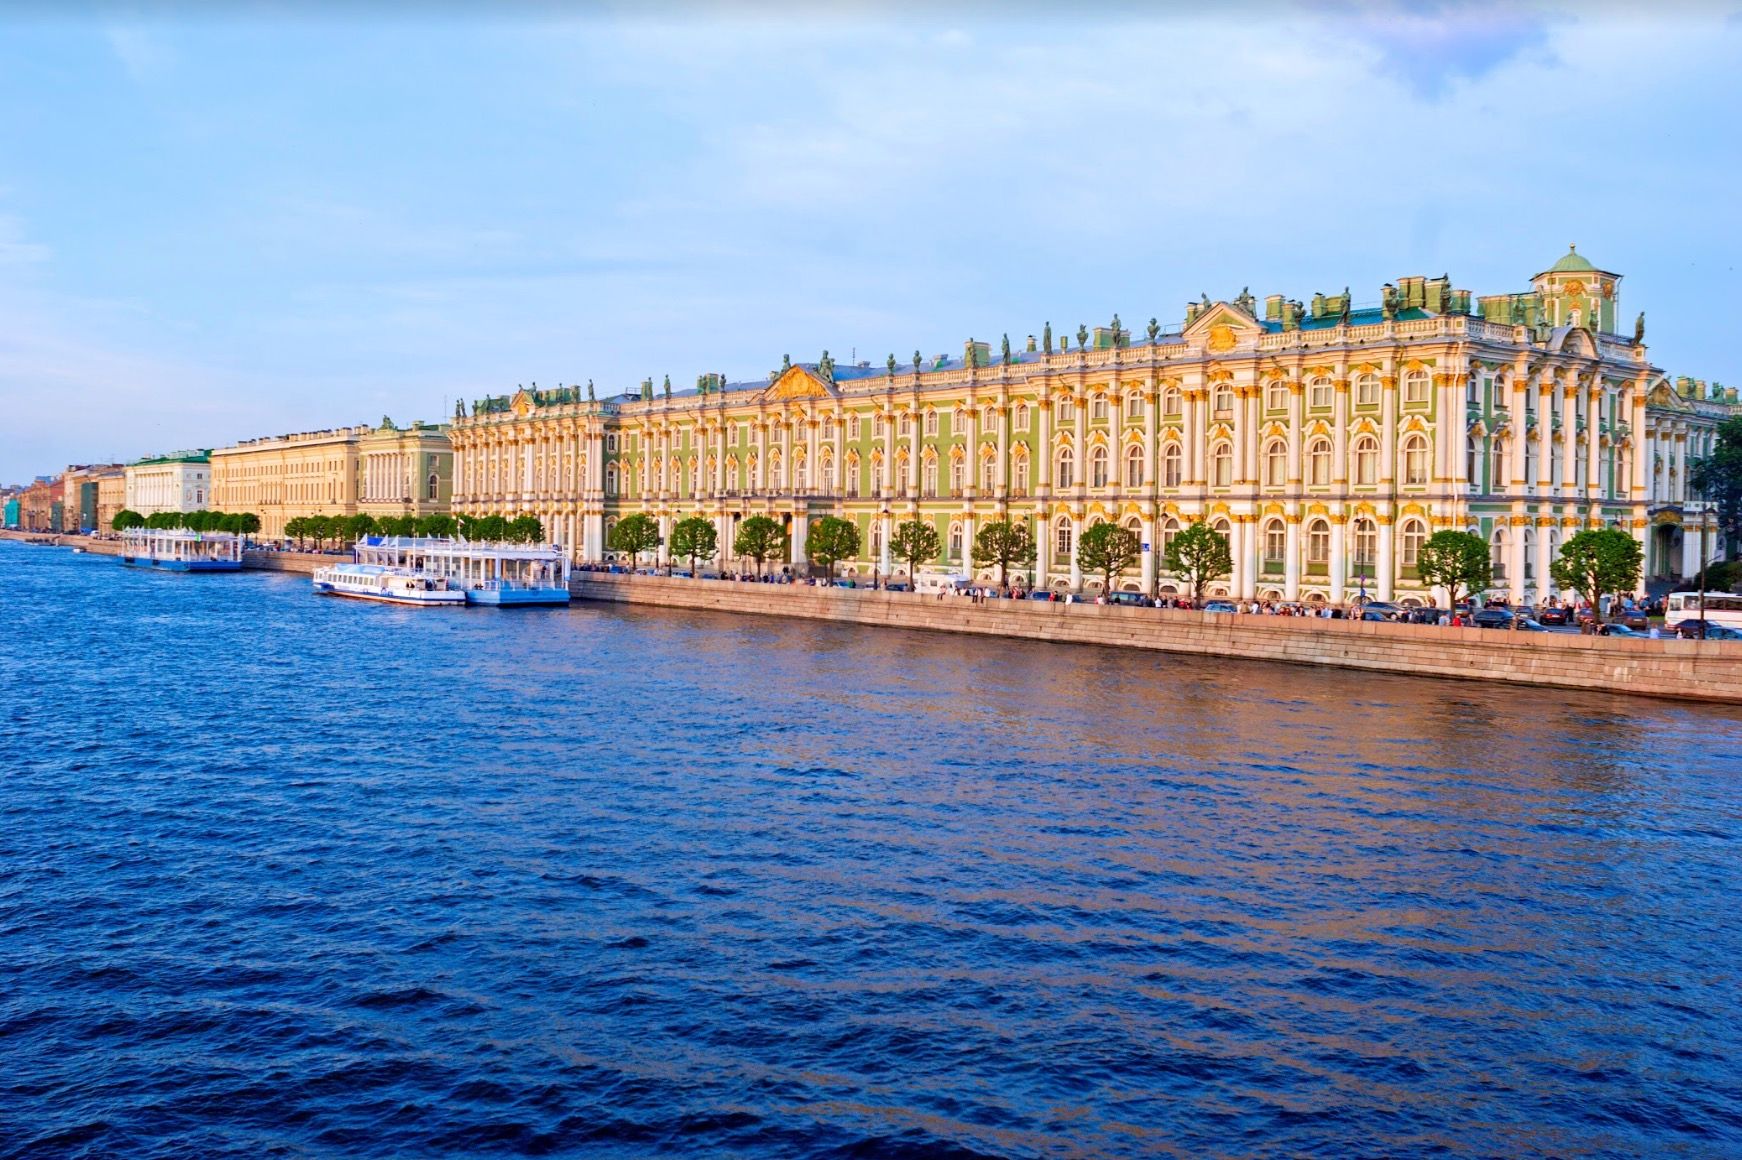 Musée de l'Ermitage, Saint-Pétersbourg - Russie ©Istock